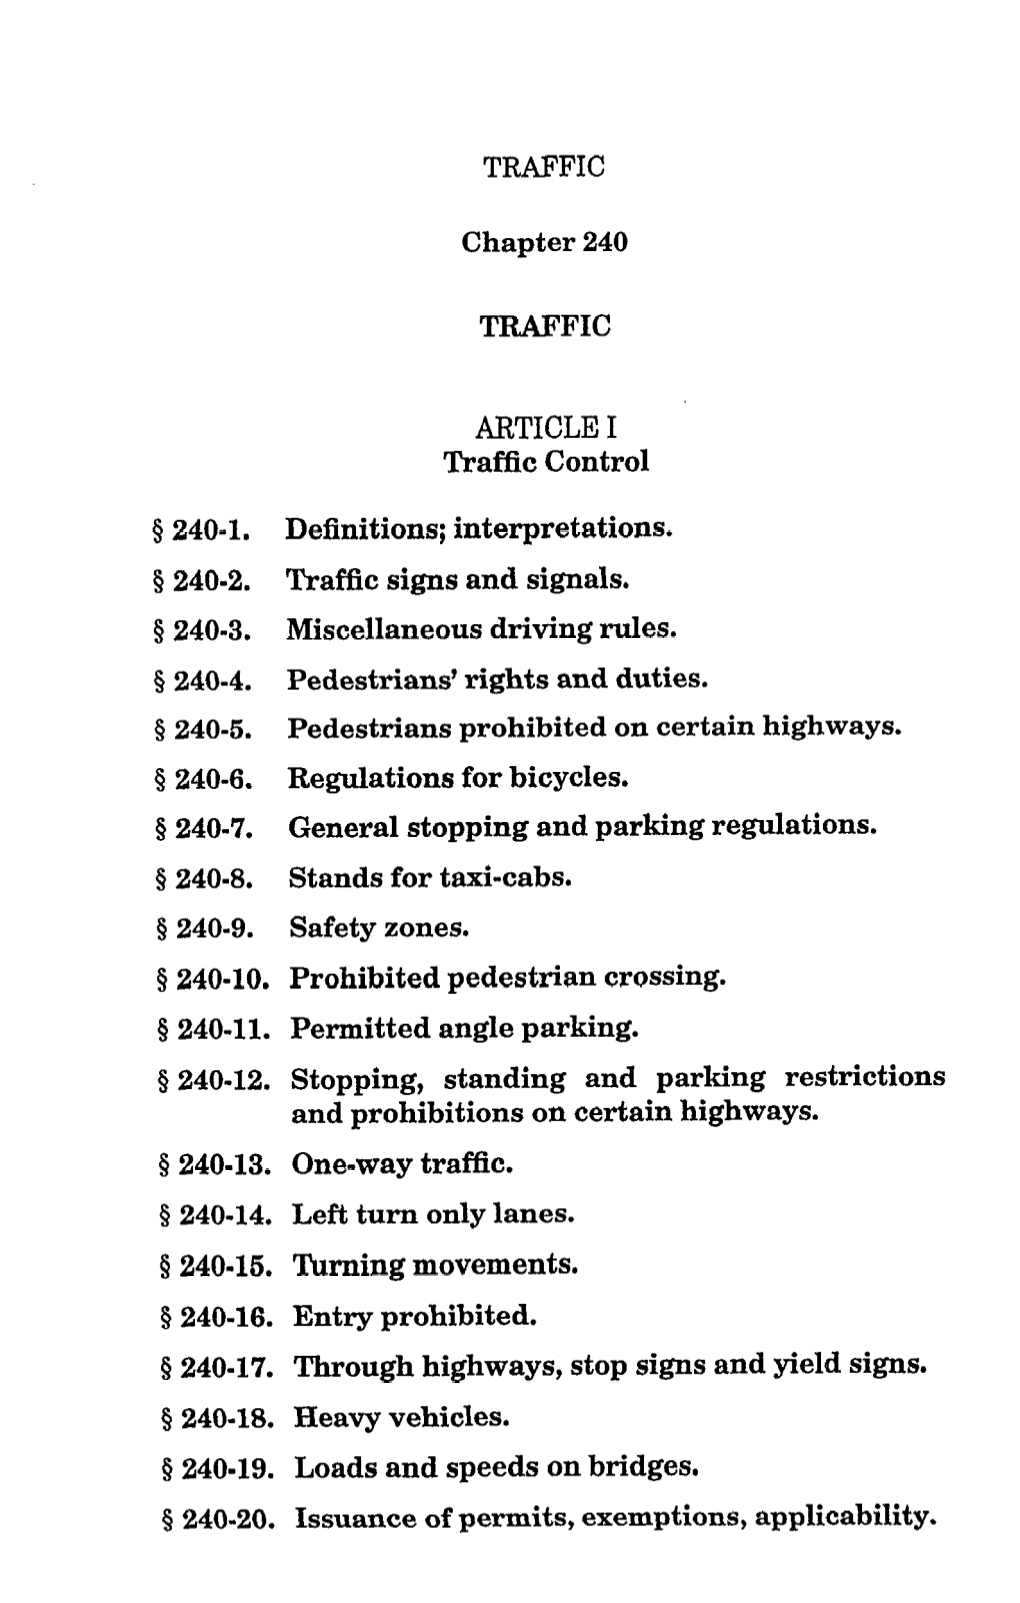 ARTICLE I Traffic Control